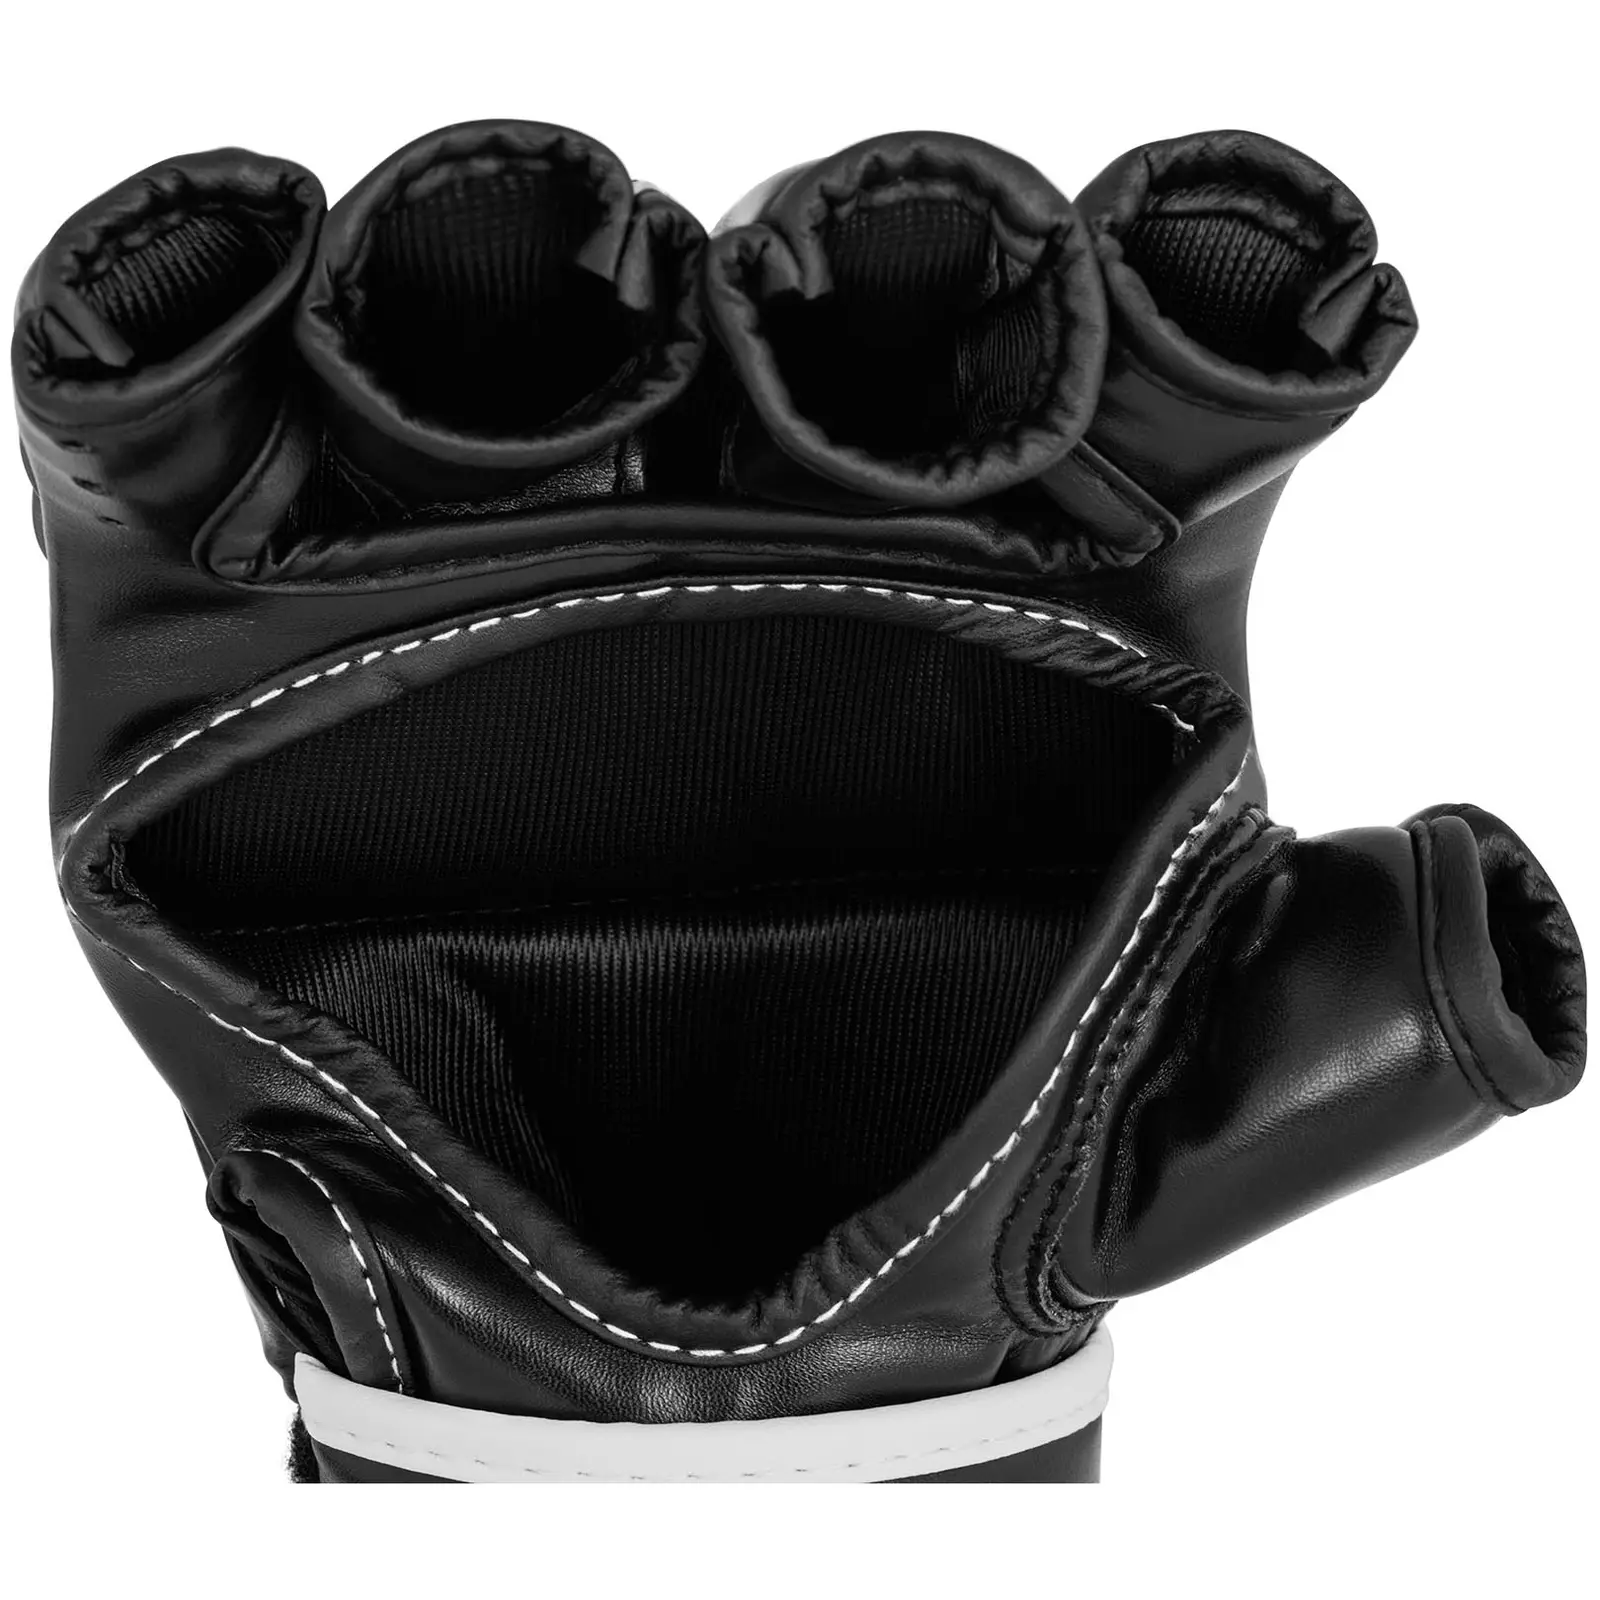 MMA rukavice - vel. L/XL - černé